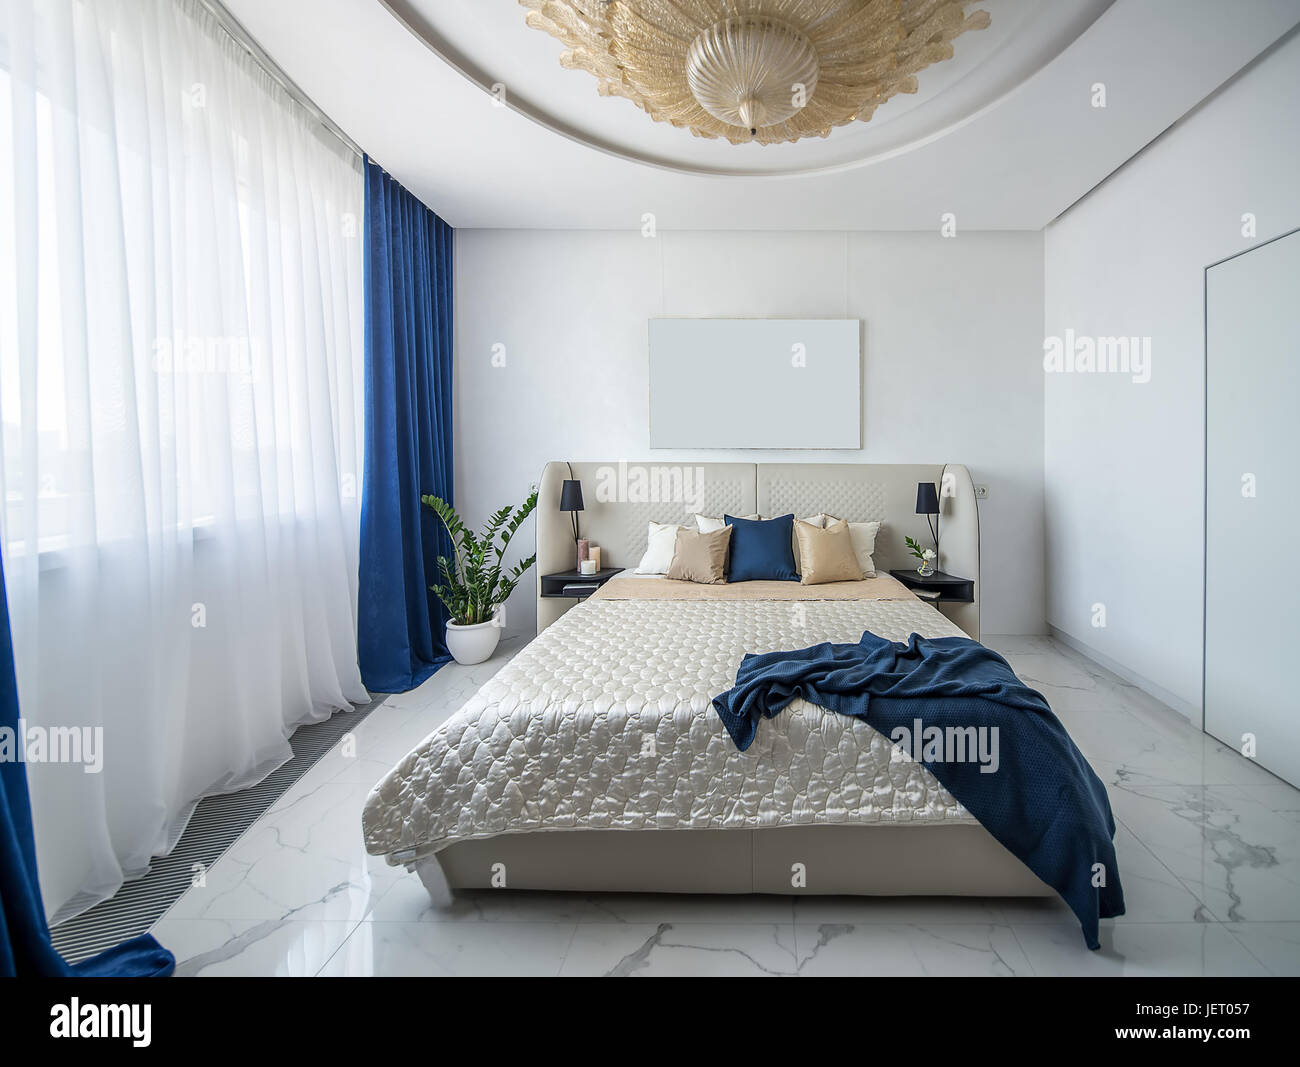 Moderne Schlafzimmer mit einem großen Phantasie goldene Kronleuchter an der Decke. Gibt es eine Beige Bett mit bunten Kissen und ein blaues Karomuster, Regale mit Kerze Stockfoto